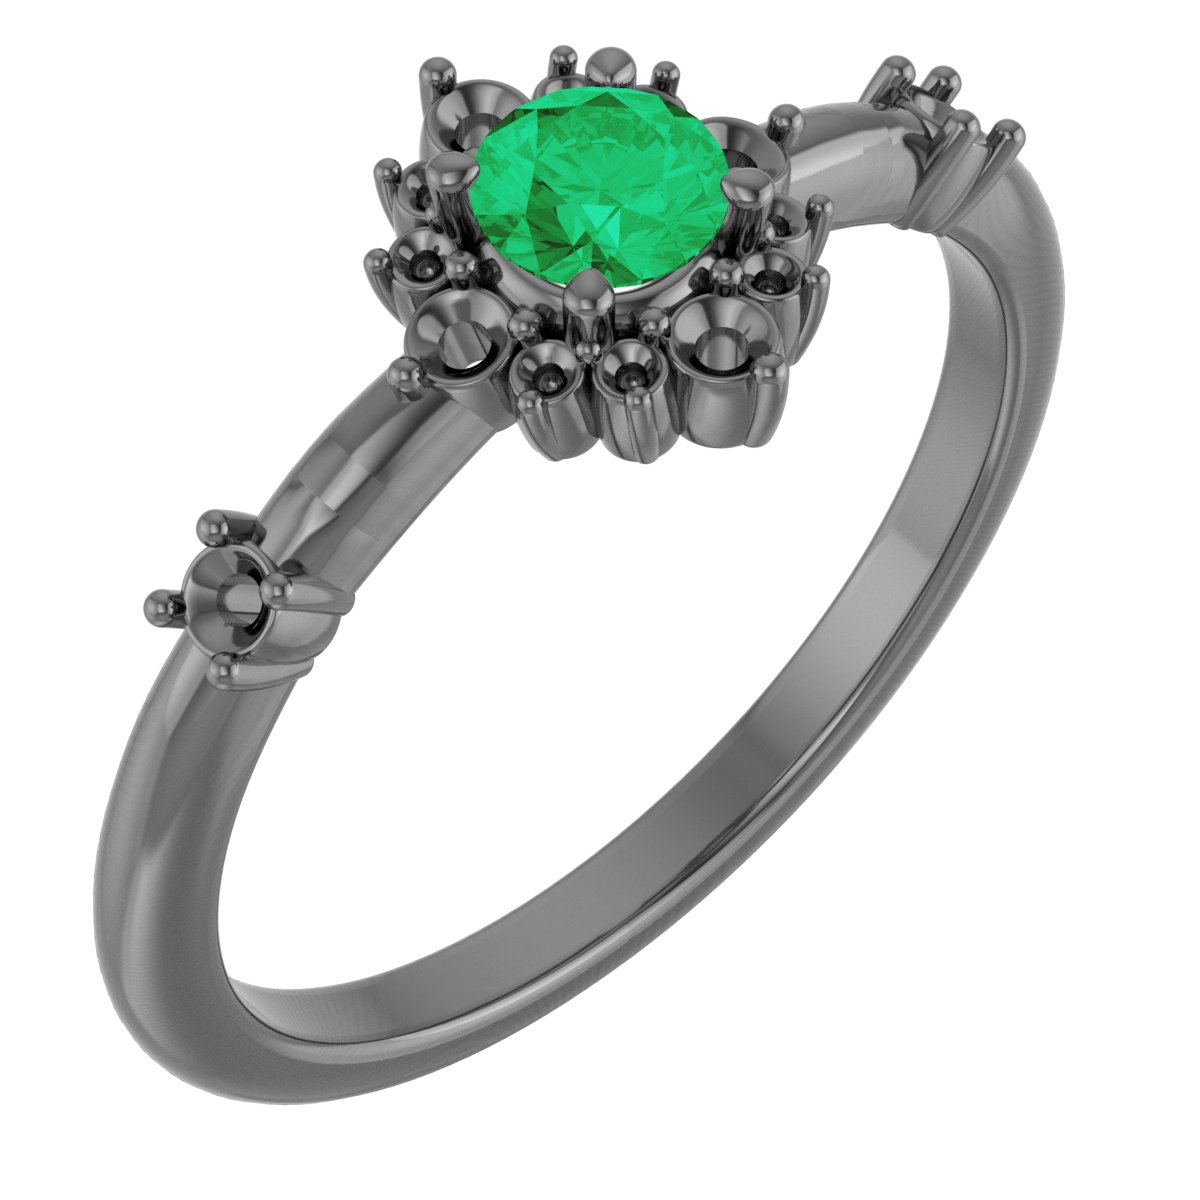 Platinum Emerald and .167 CTW Diamond Ring Ref. 15641471